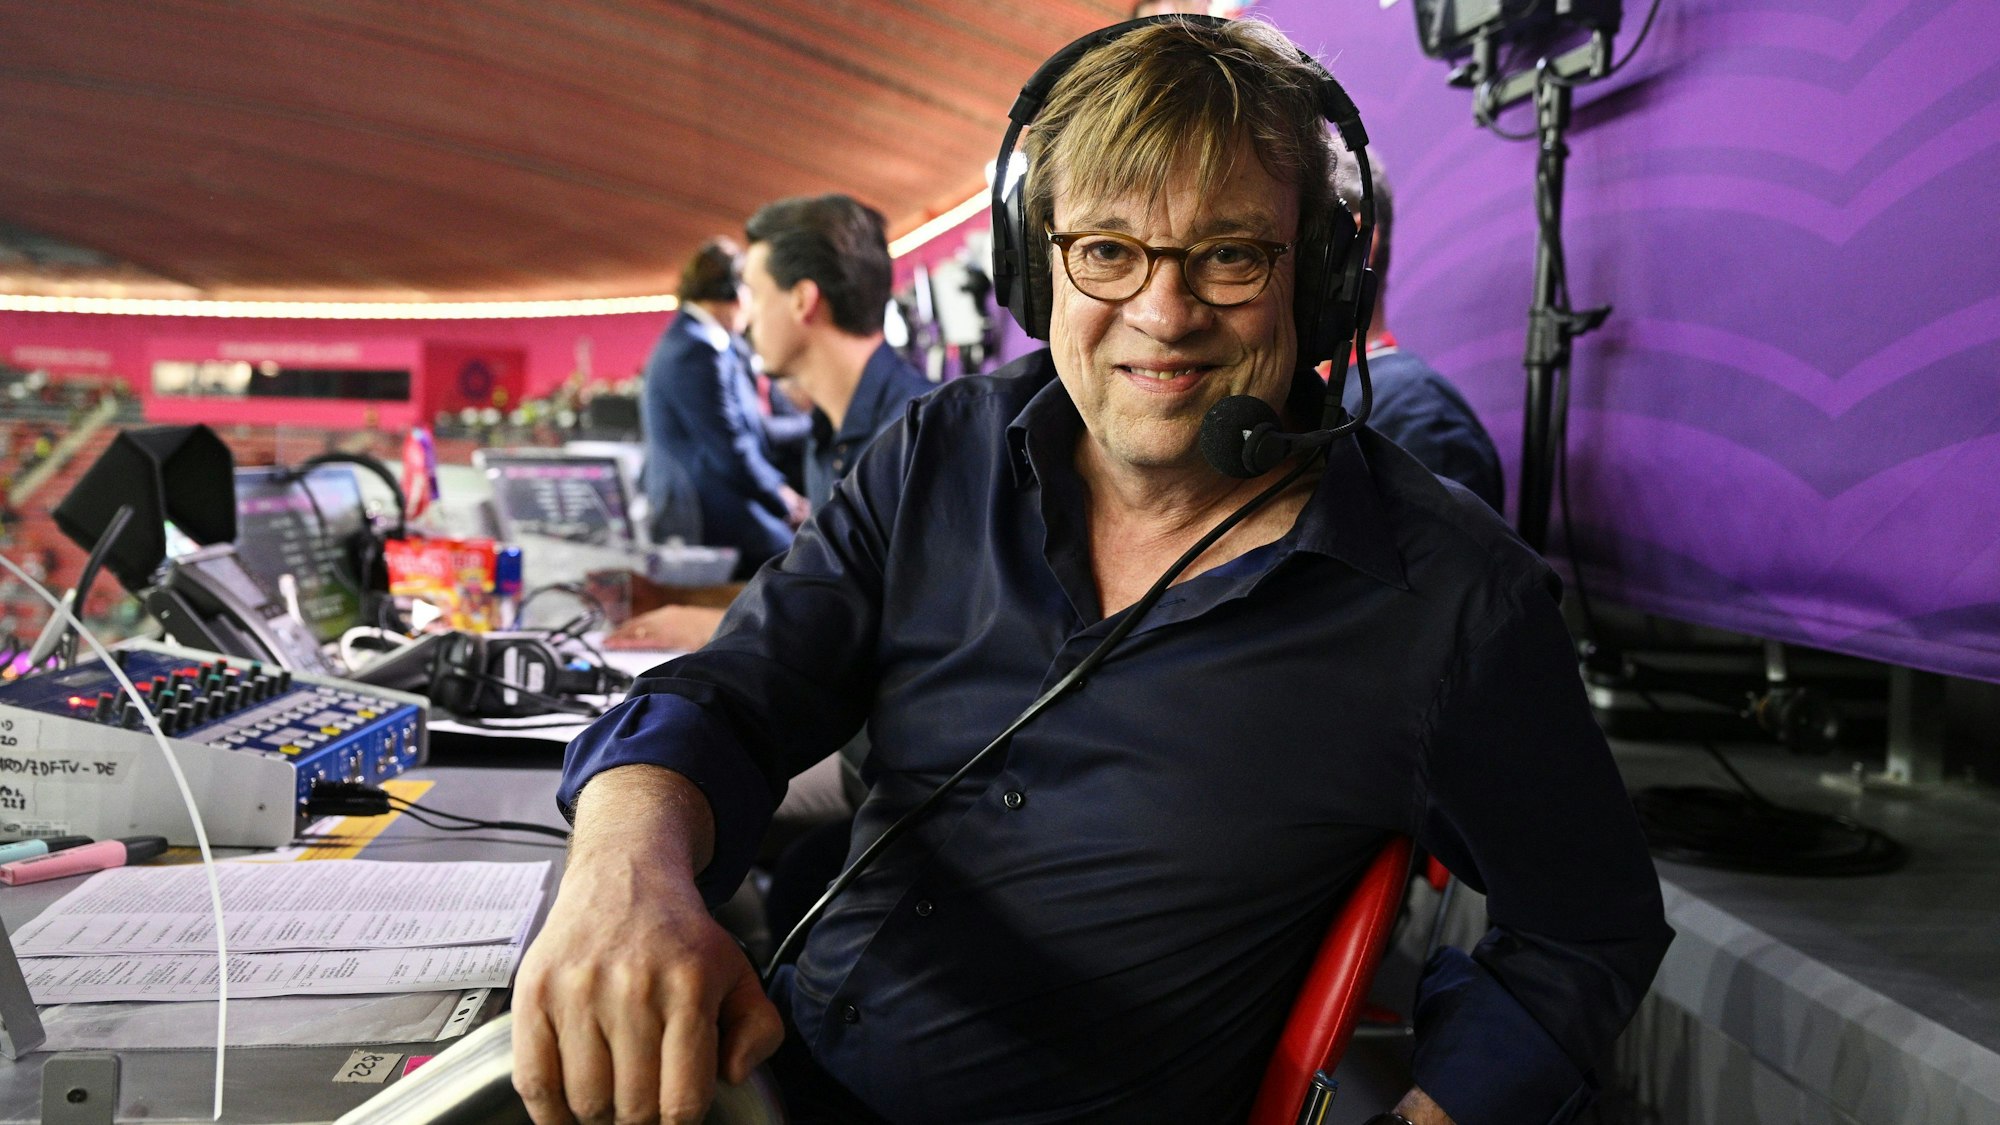 Béla Réthy posiert auf der Kommentatoren-Tribüne für ein Foto bei der WM 2022.